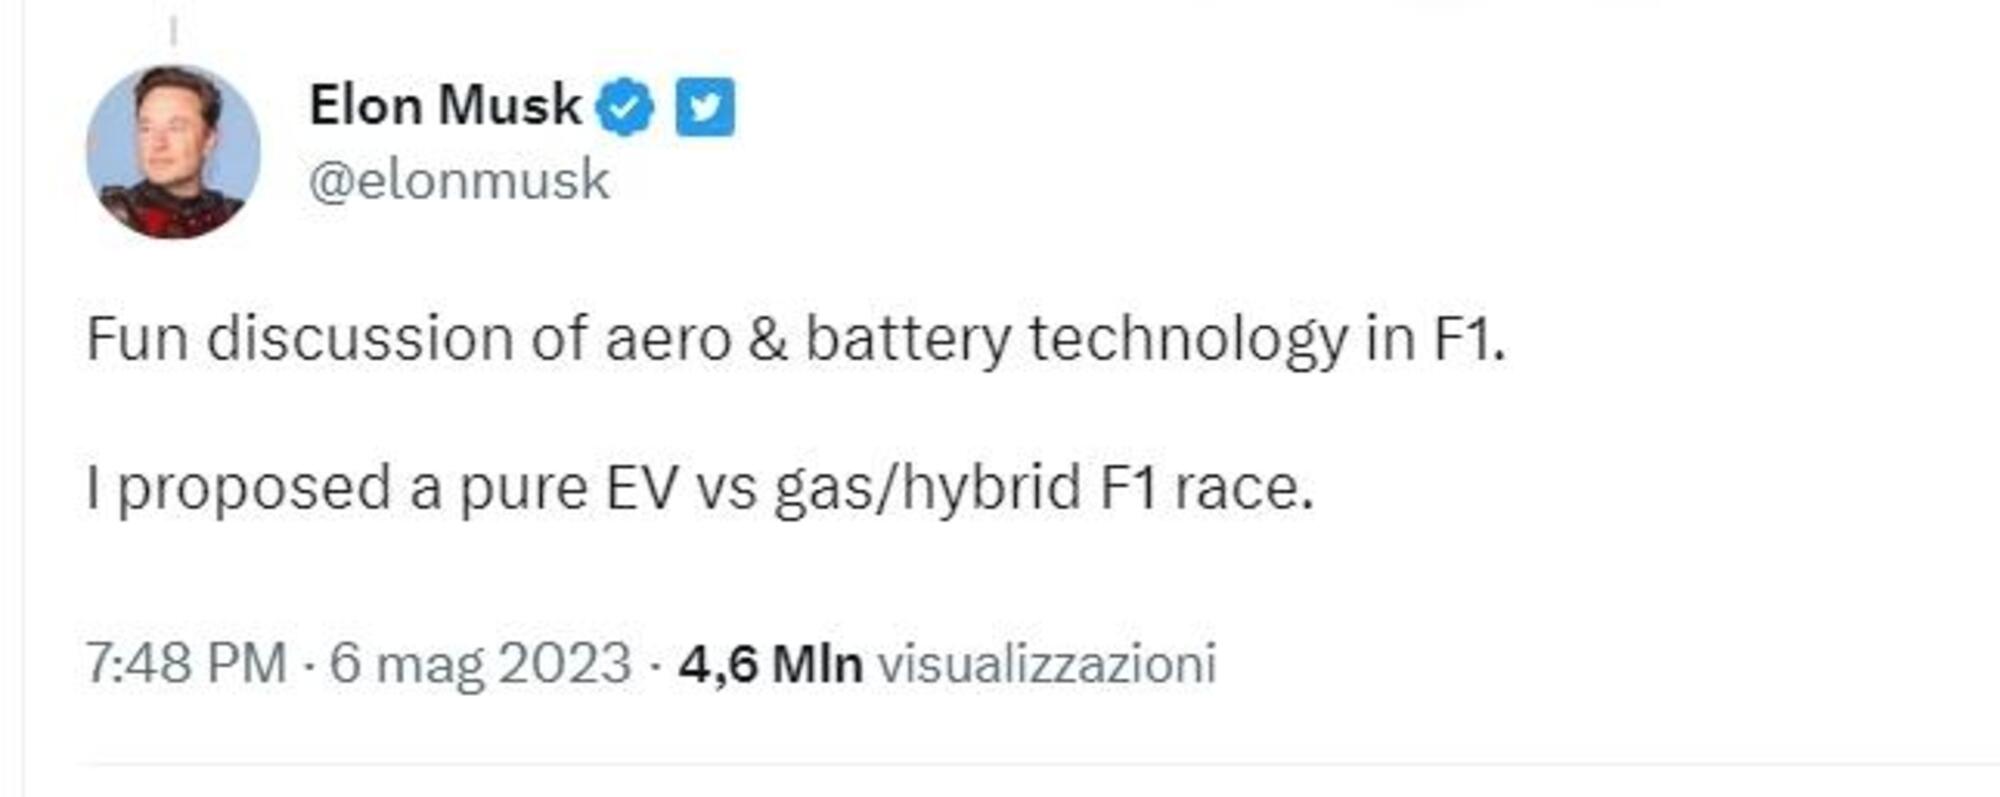 La proposta di Musk per la F1